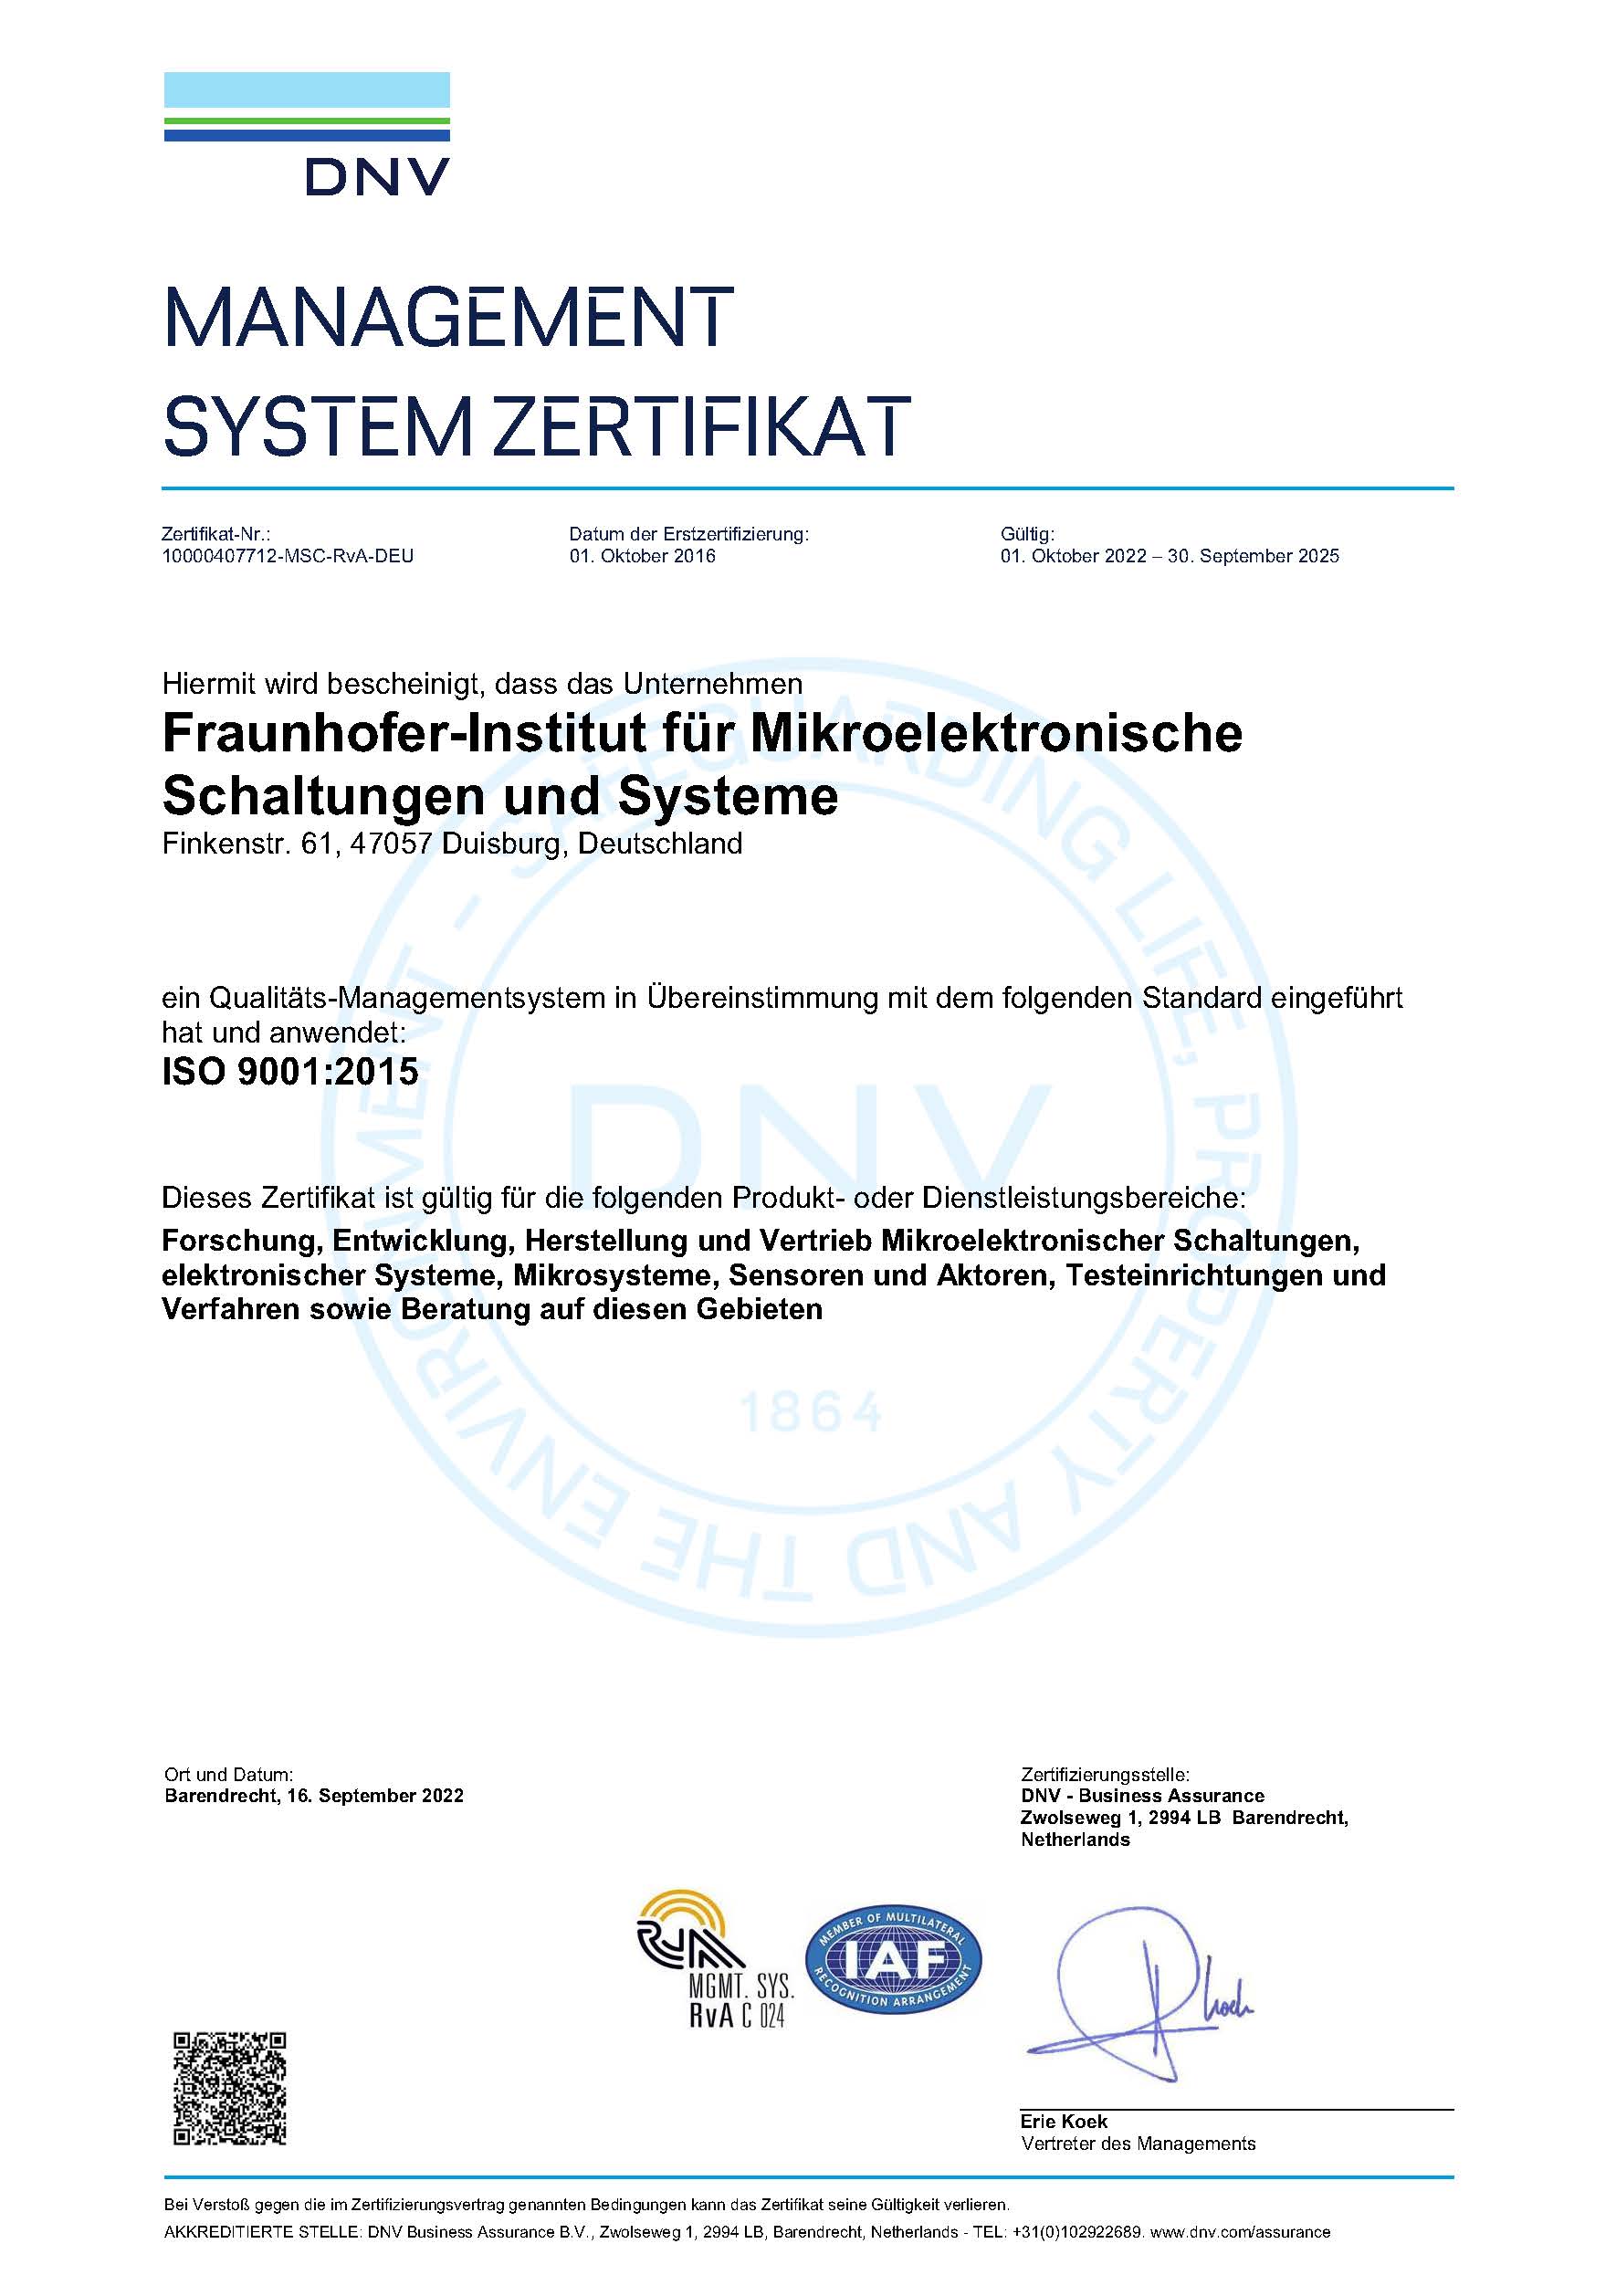 Eine Abbildung des Zertifikats der Prüfungsnorm ISO 9001